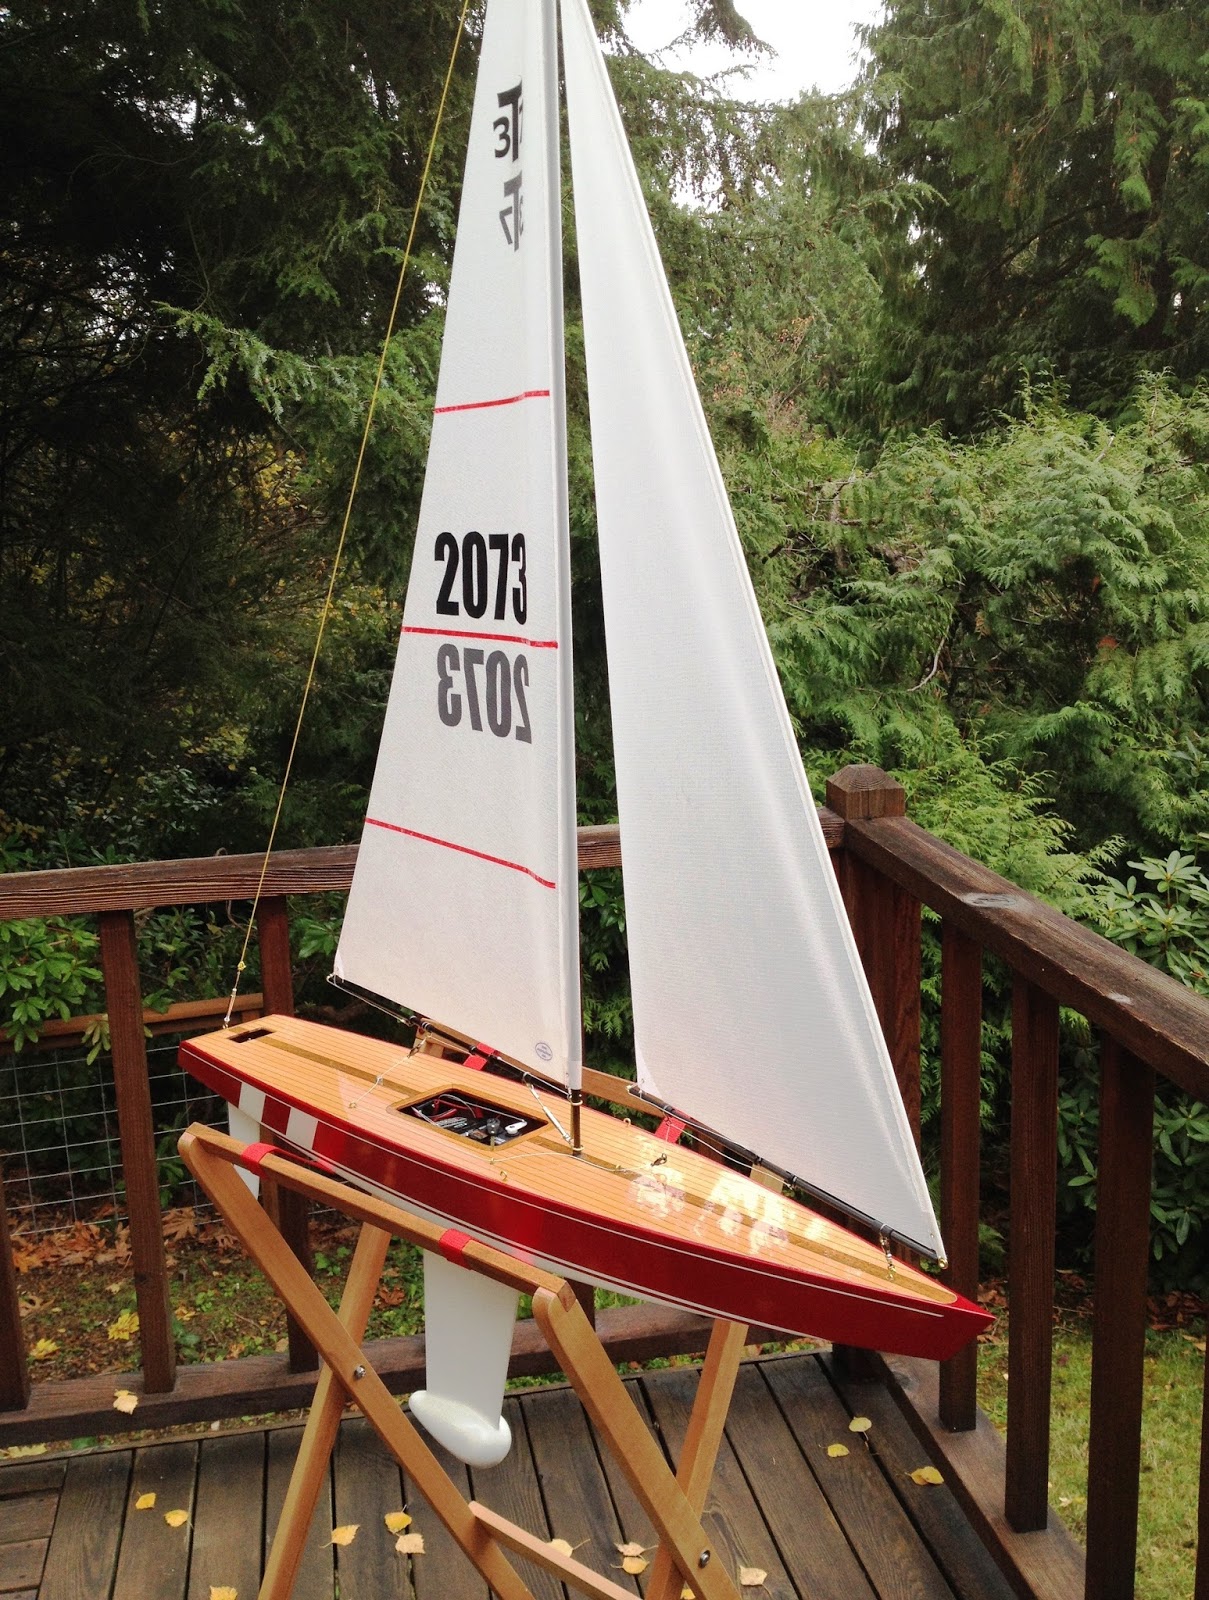 build a model sailboat